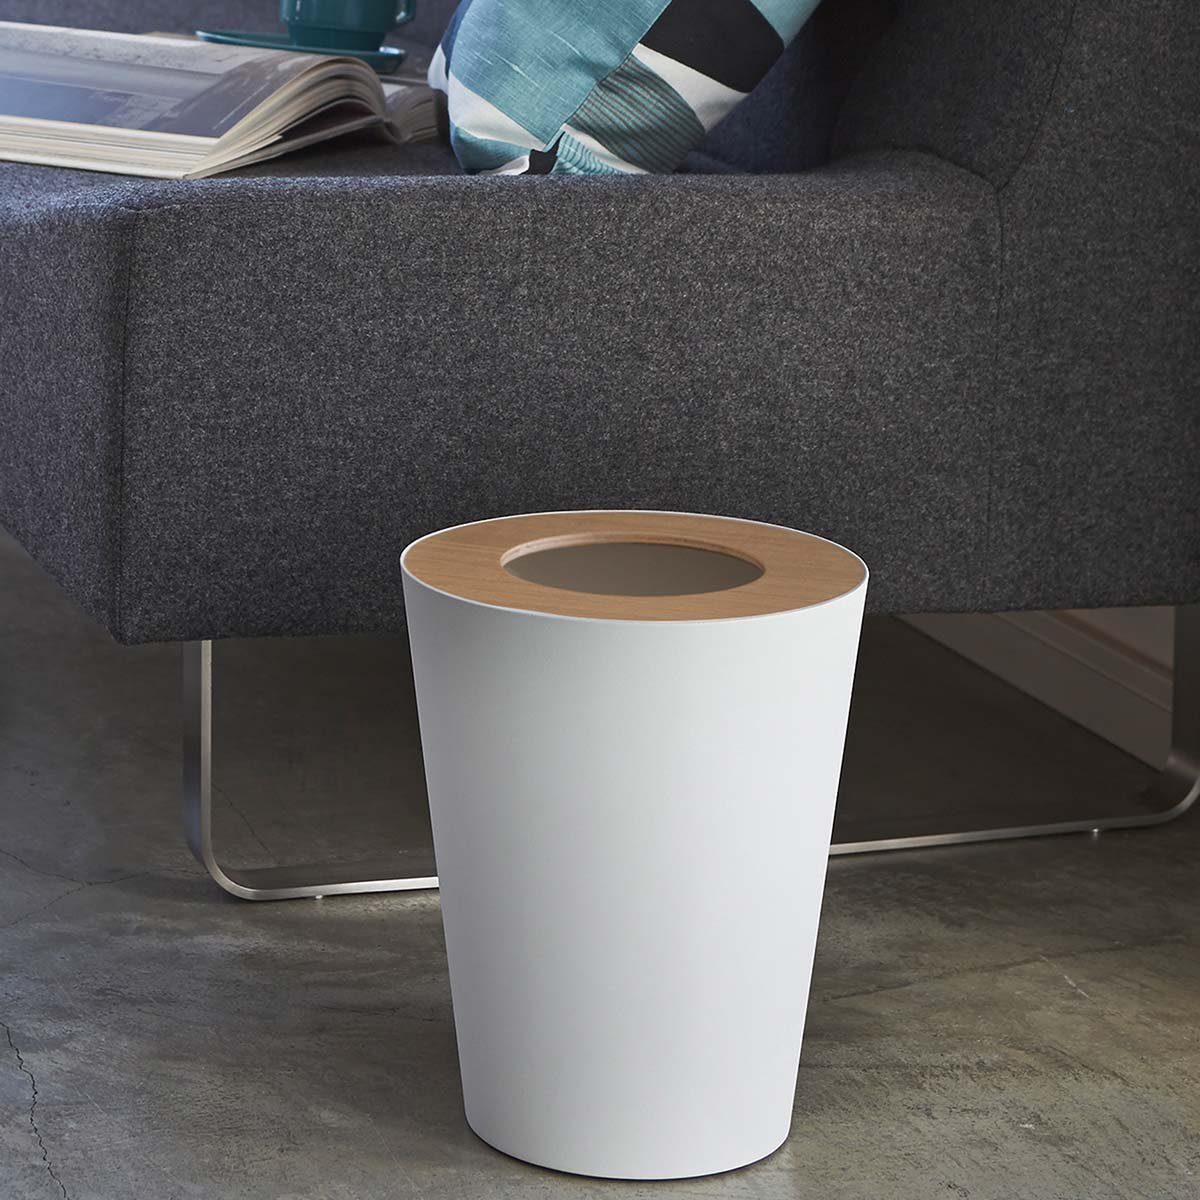 Yamazaki Papierkorb Rin, Mülleimer, klein und minimalistisch, modern, rund, nur 28cm hoch